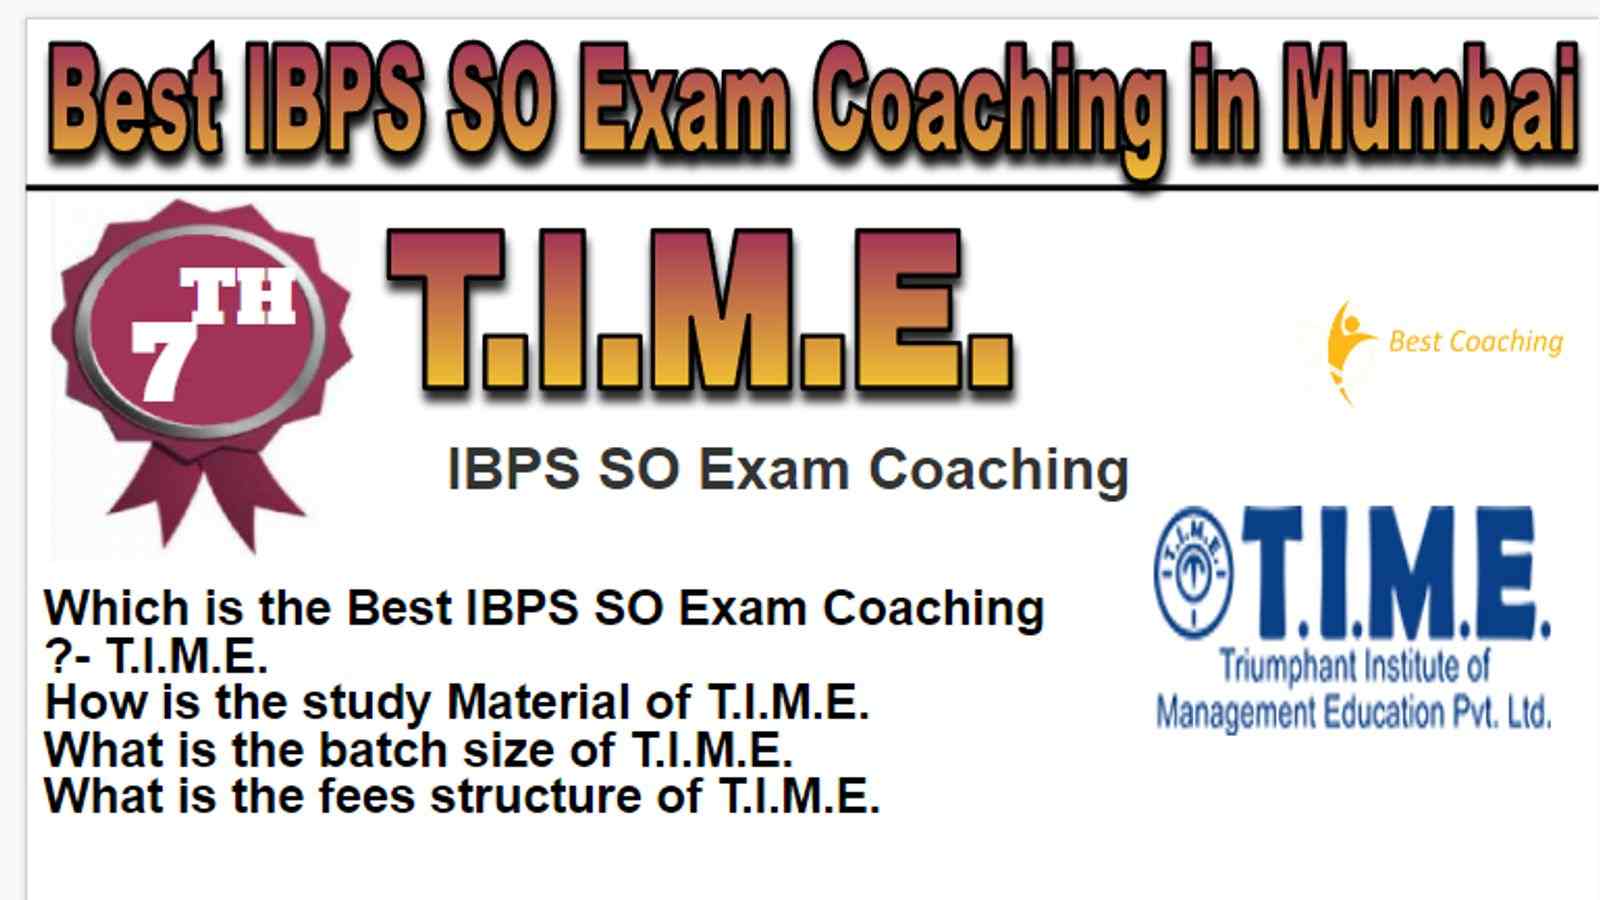 Rank 7 Best IBPS SO Exam Coaching in Mumbai